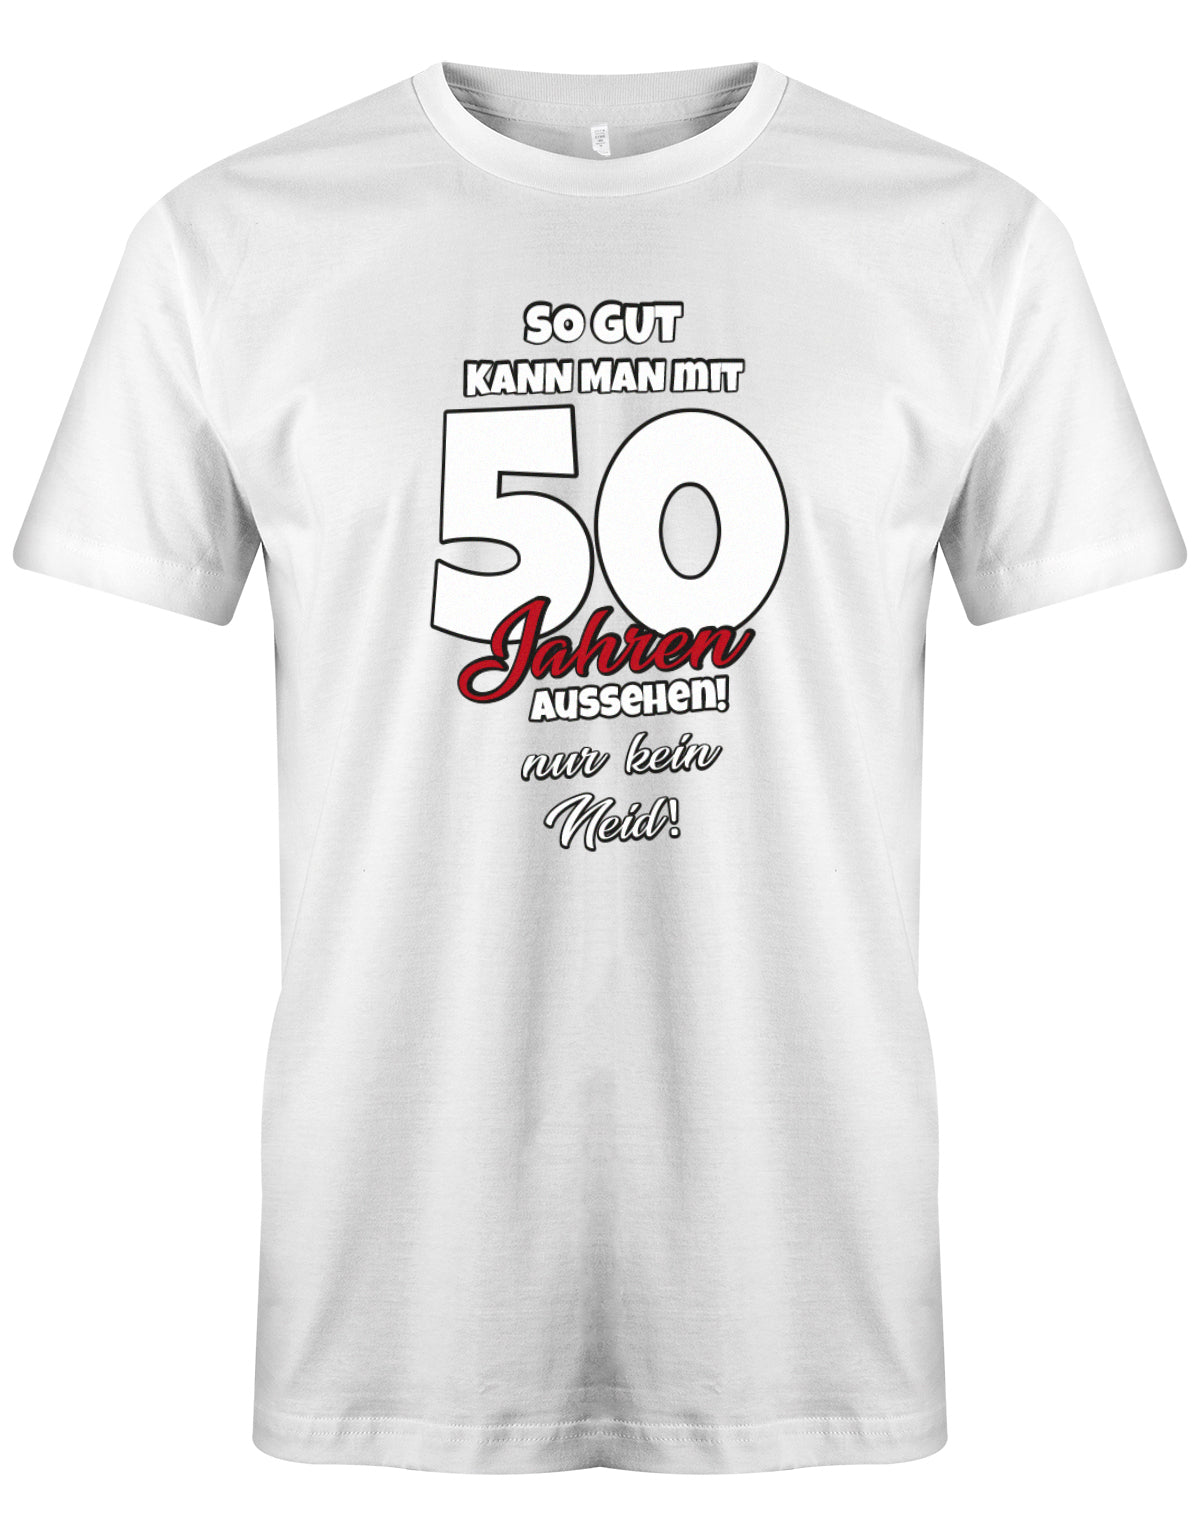 Lustiges T-Shirt zum 50 Geburtstag für den Mann Bedruckt mit So gut kann man mit 50 Jahren aussehen! Nur kein Neid! Weiss